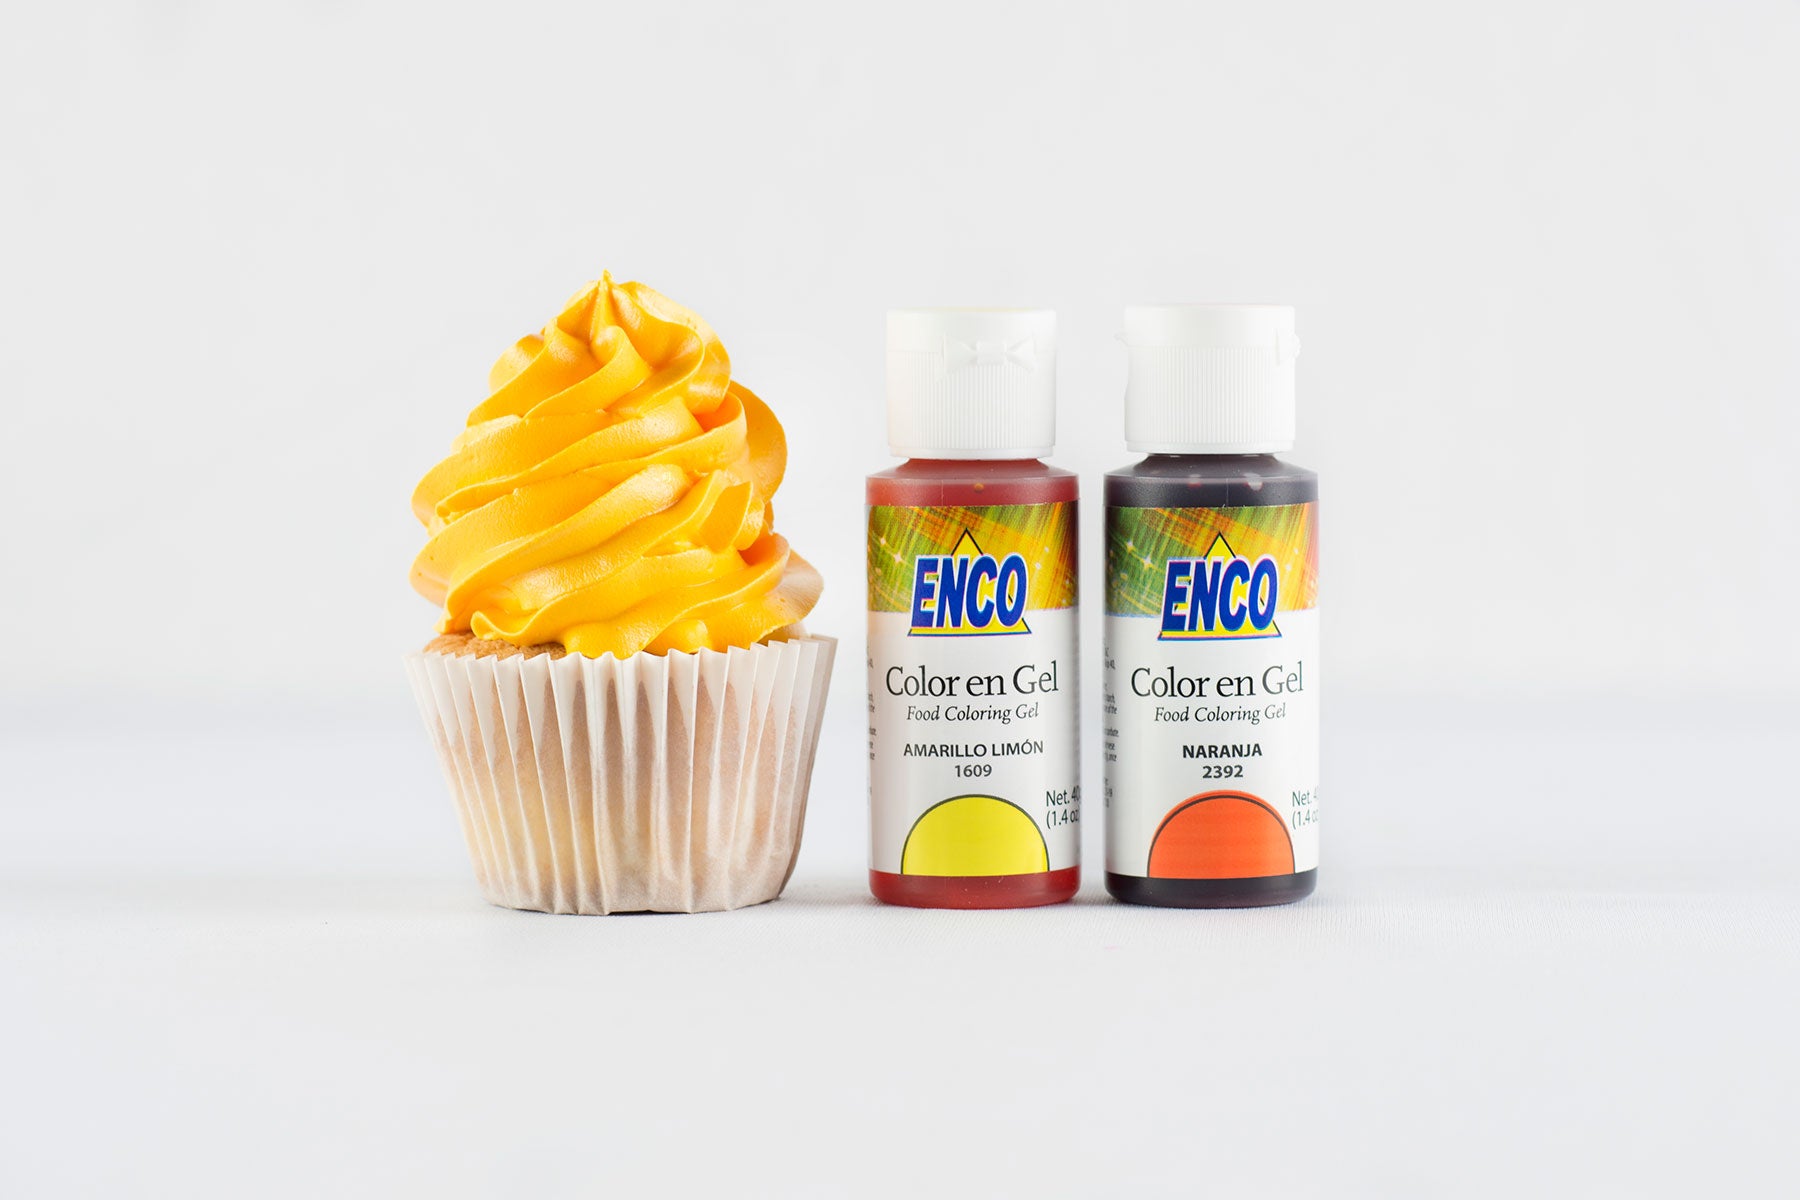 Mango Enco Foods